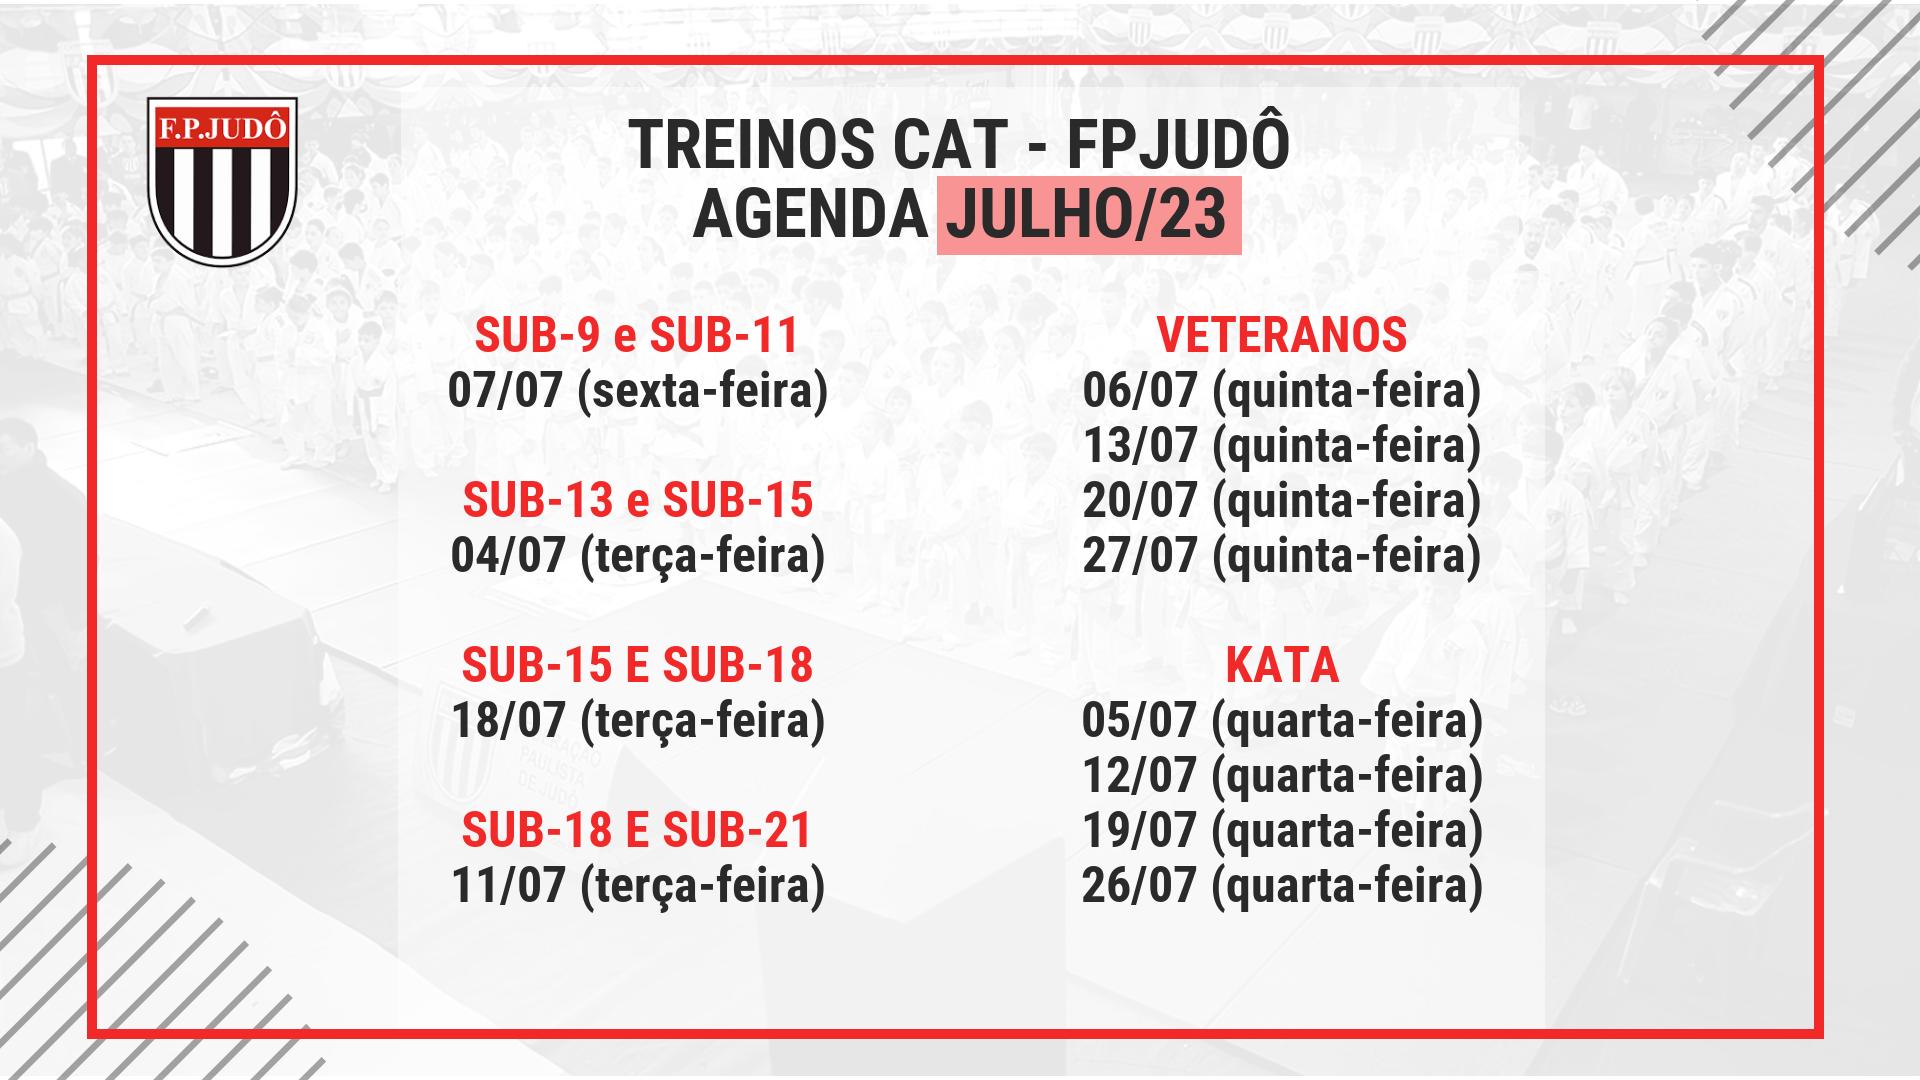 Informativo Treino CAT JULHO 23